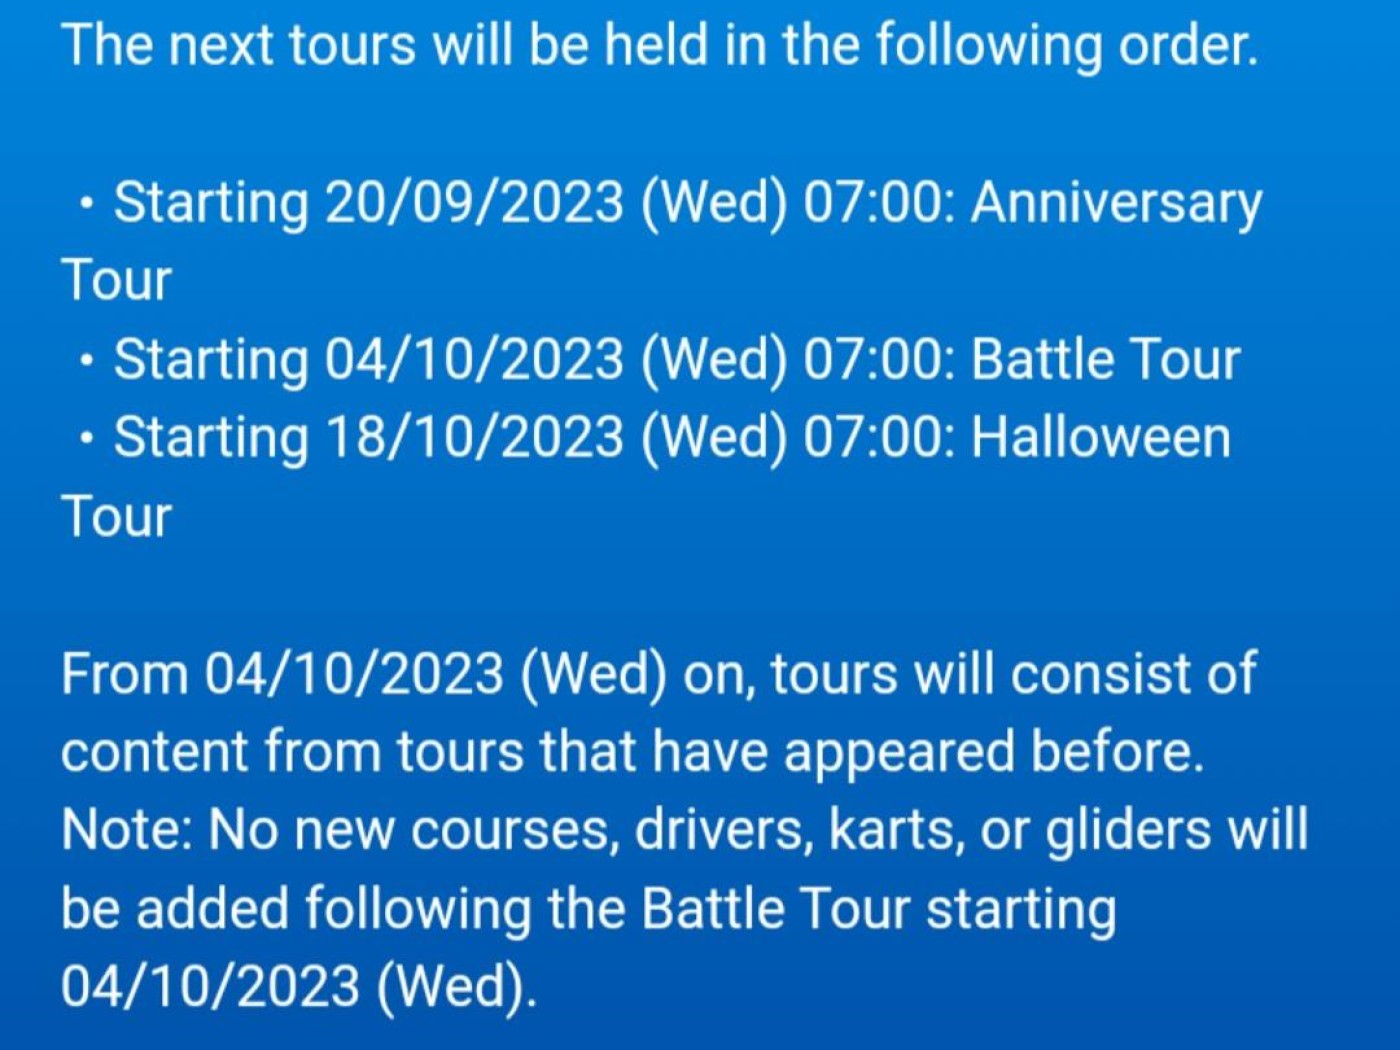 Como participar do beta de Mario Kart Tour para celulares Android